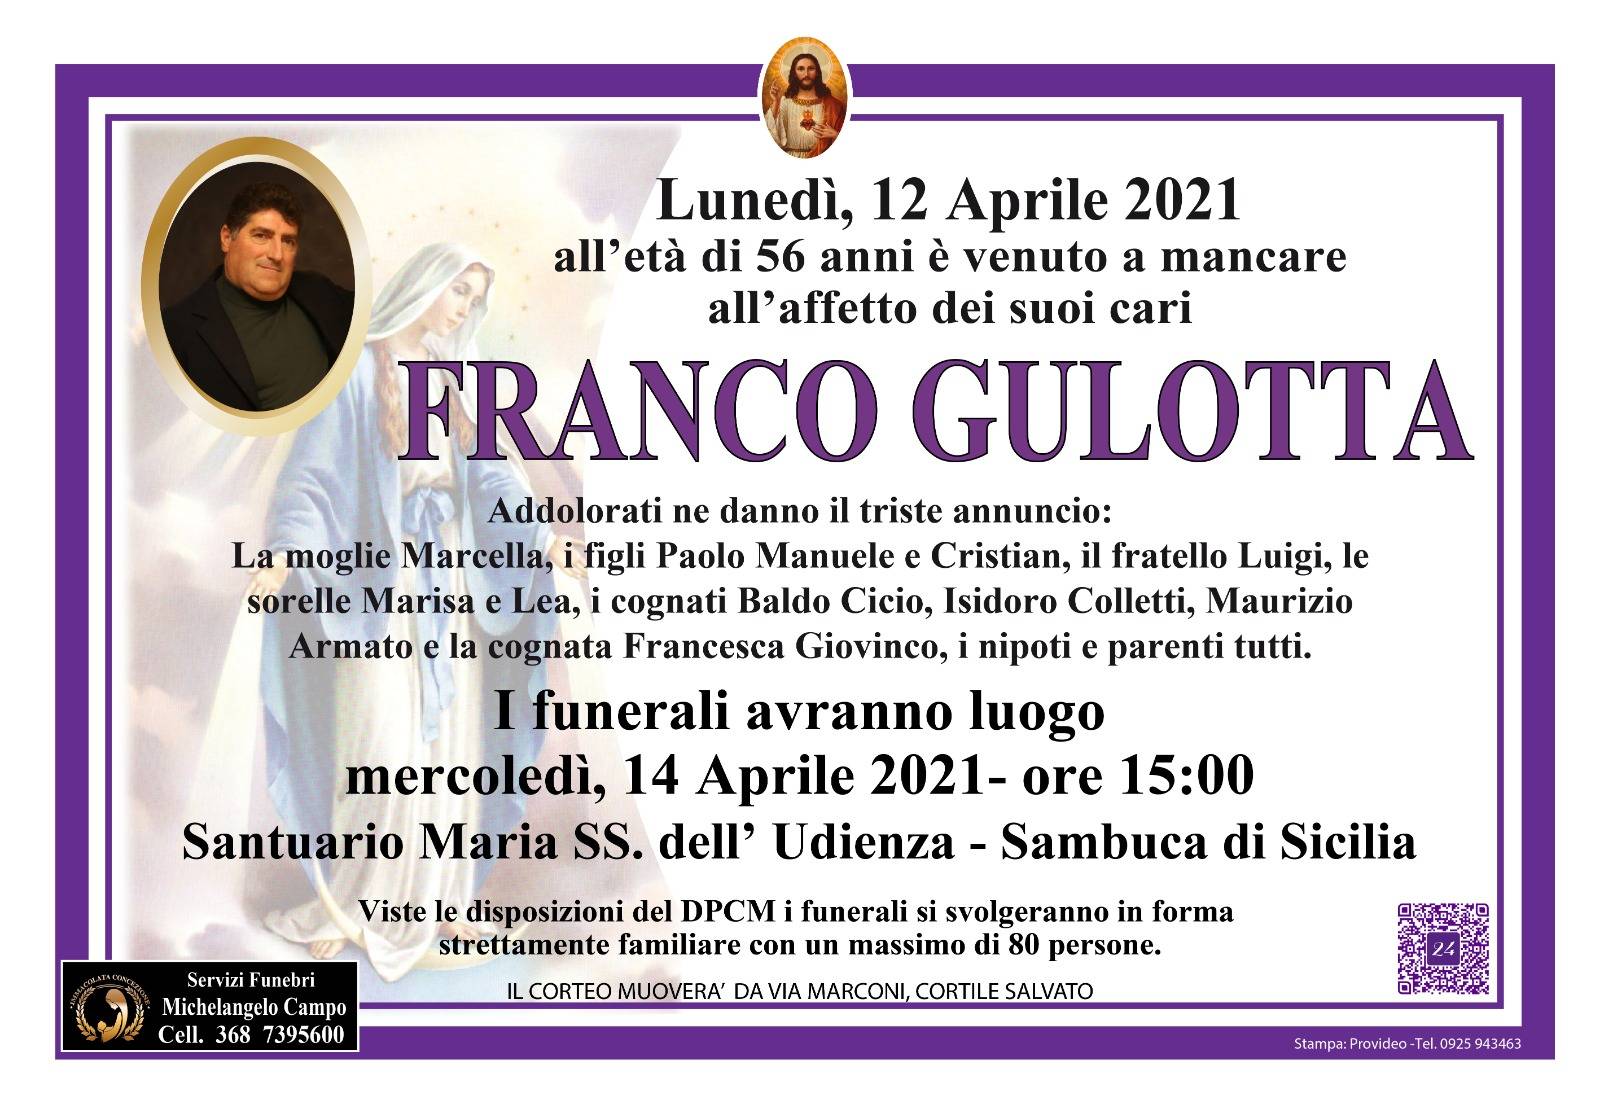 Franco Gulotta